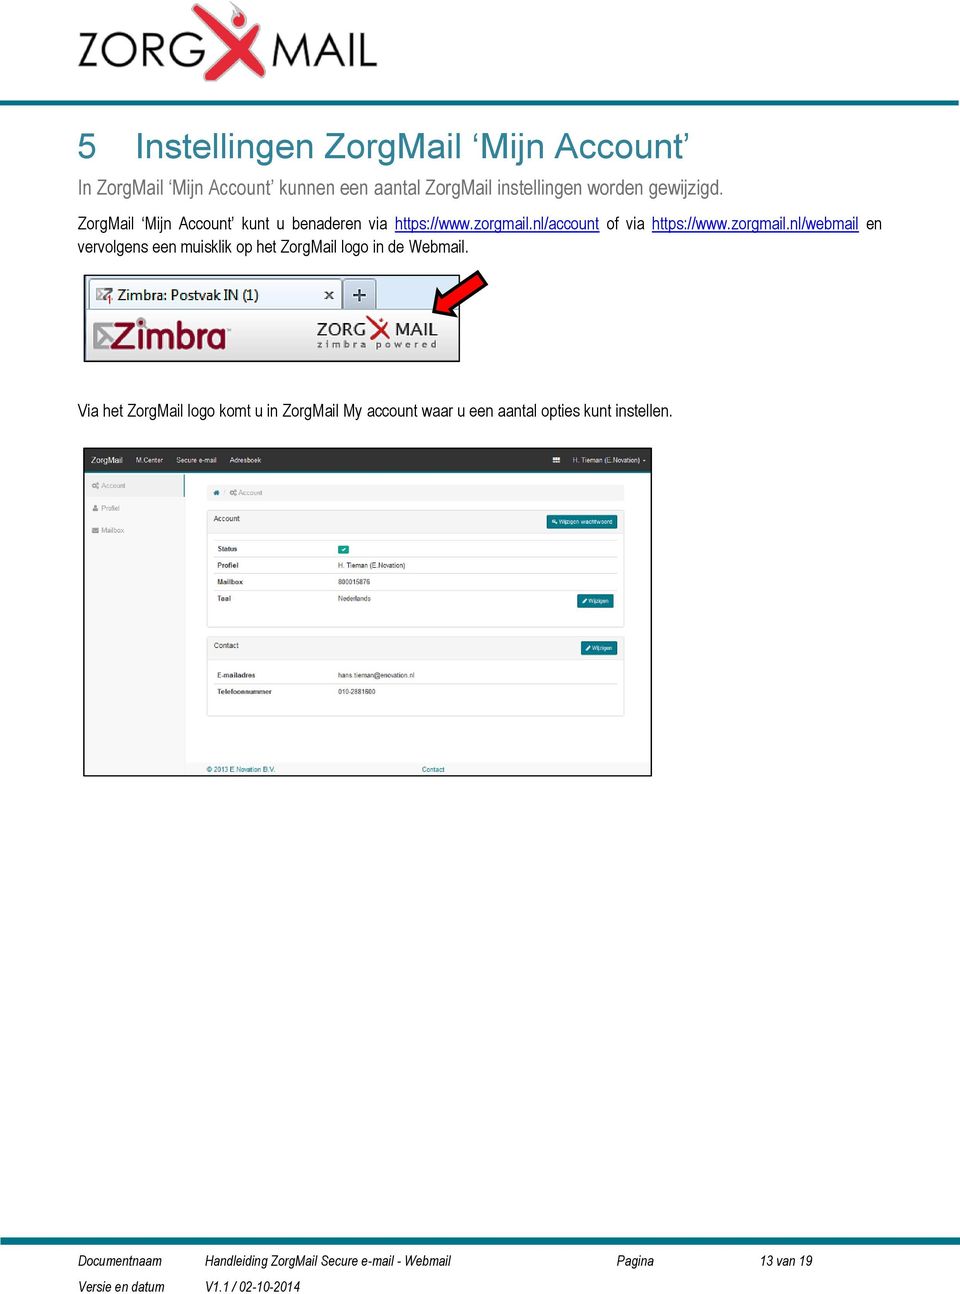 nl/account of via https://www.zorgmail.nl/webmail en vervolgens een muisklik op het ZorgMail logo in de Webmail.